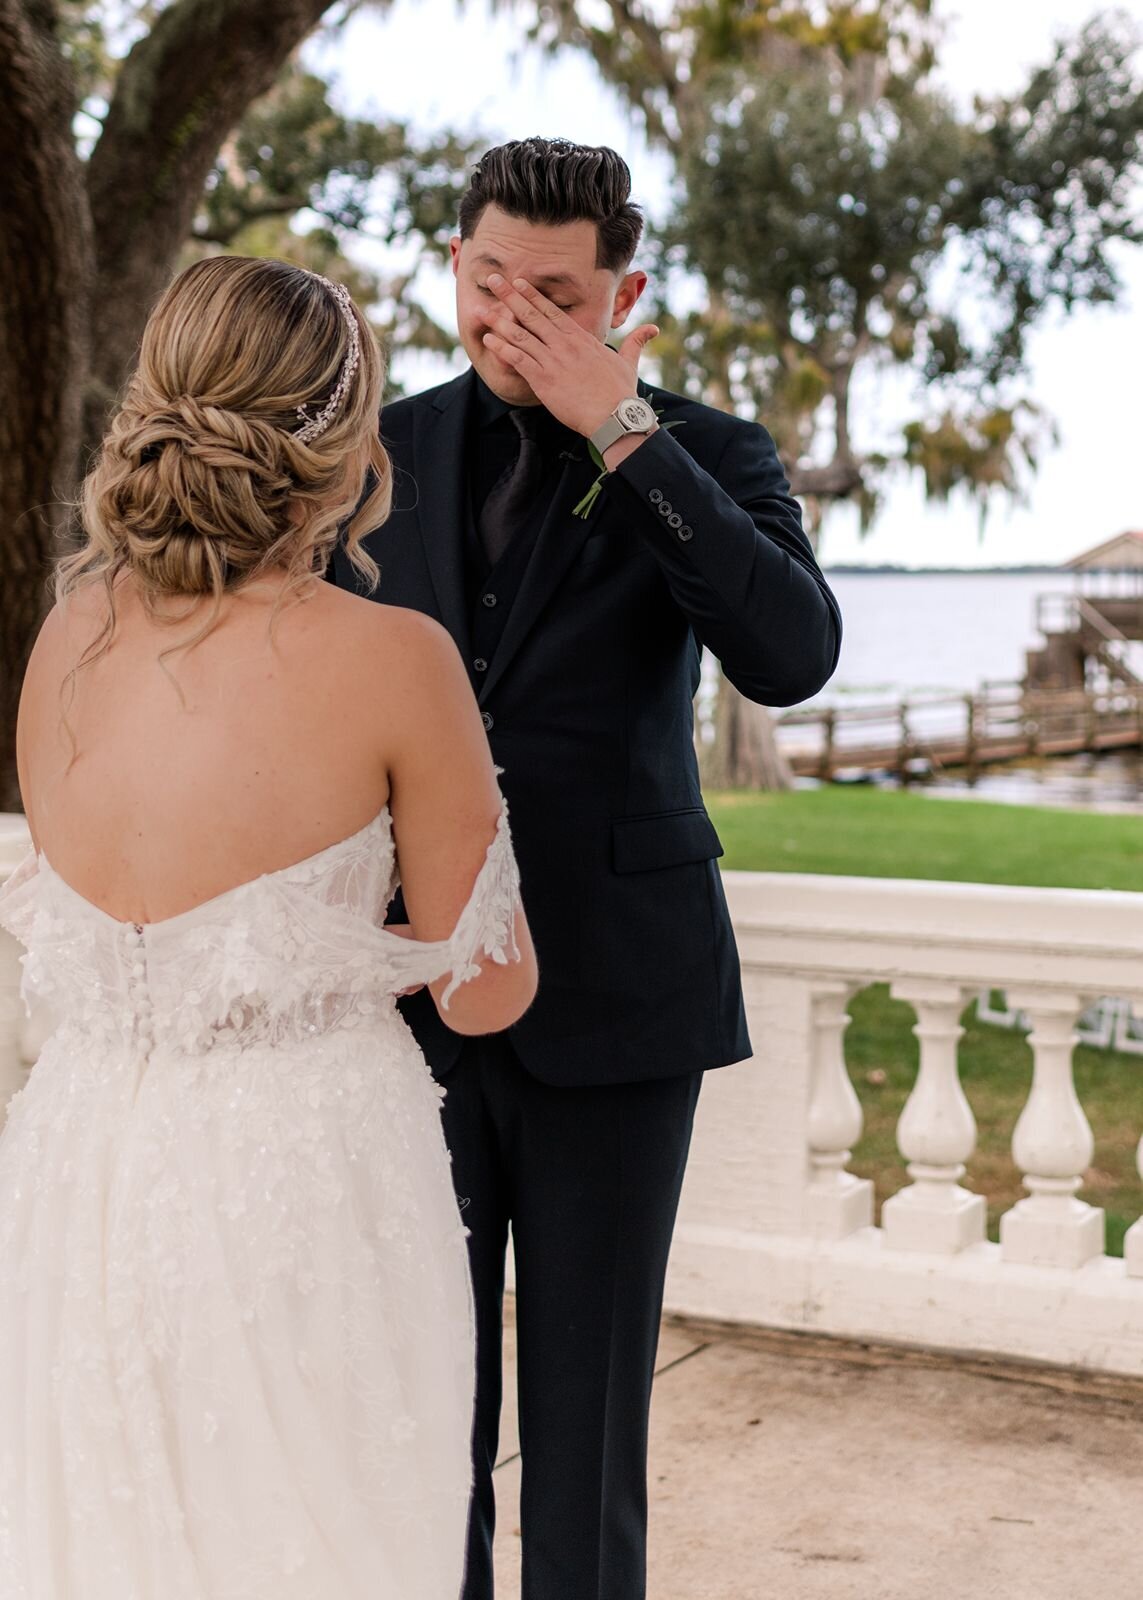 Grooms reaction to bride at first look at Bella Cosa, Lake Wales, Florida